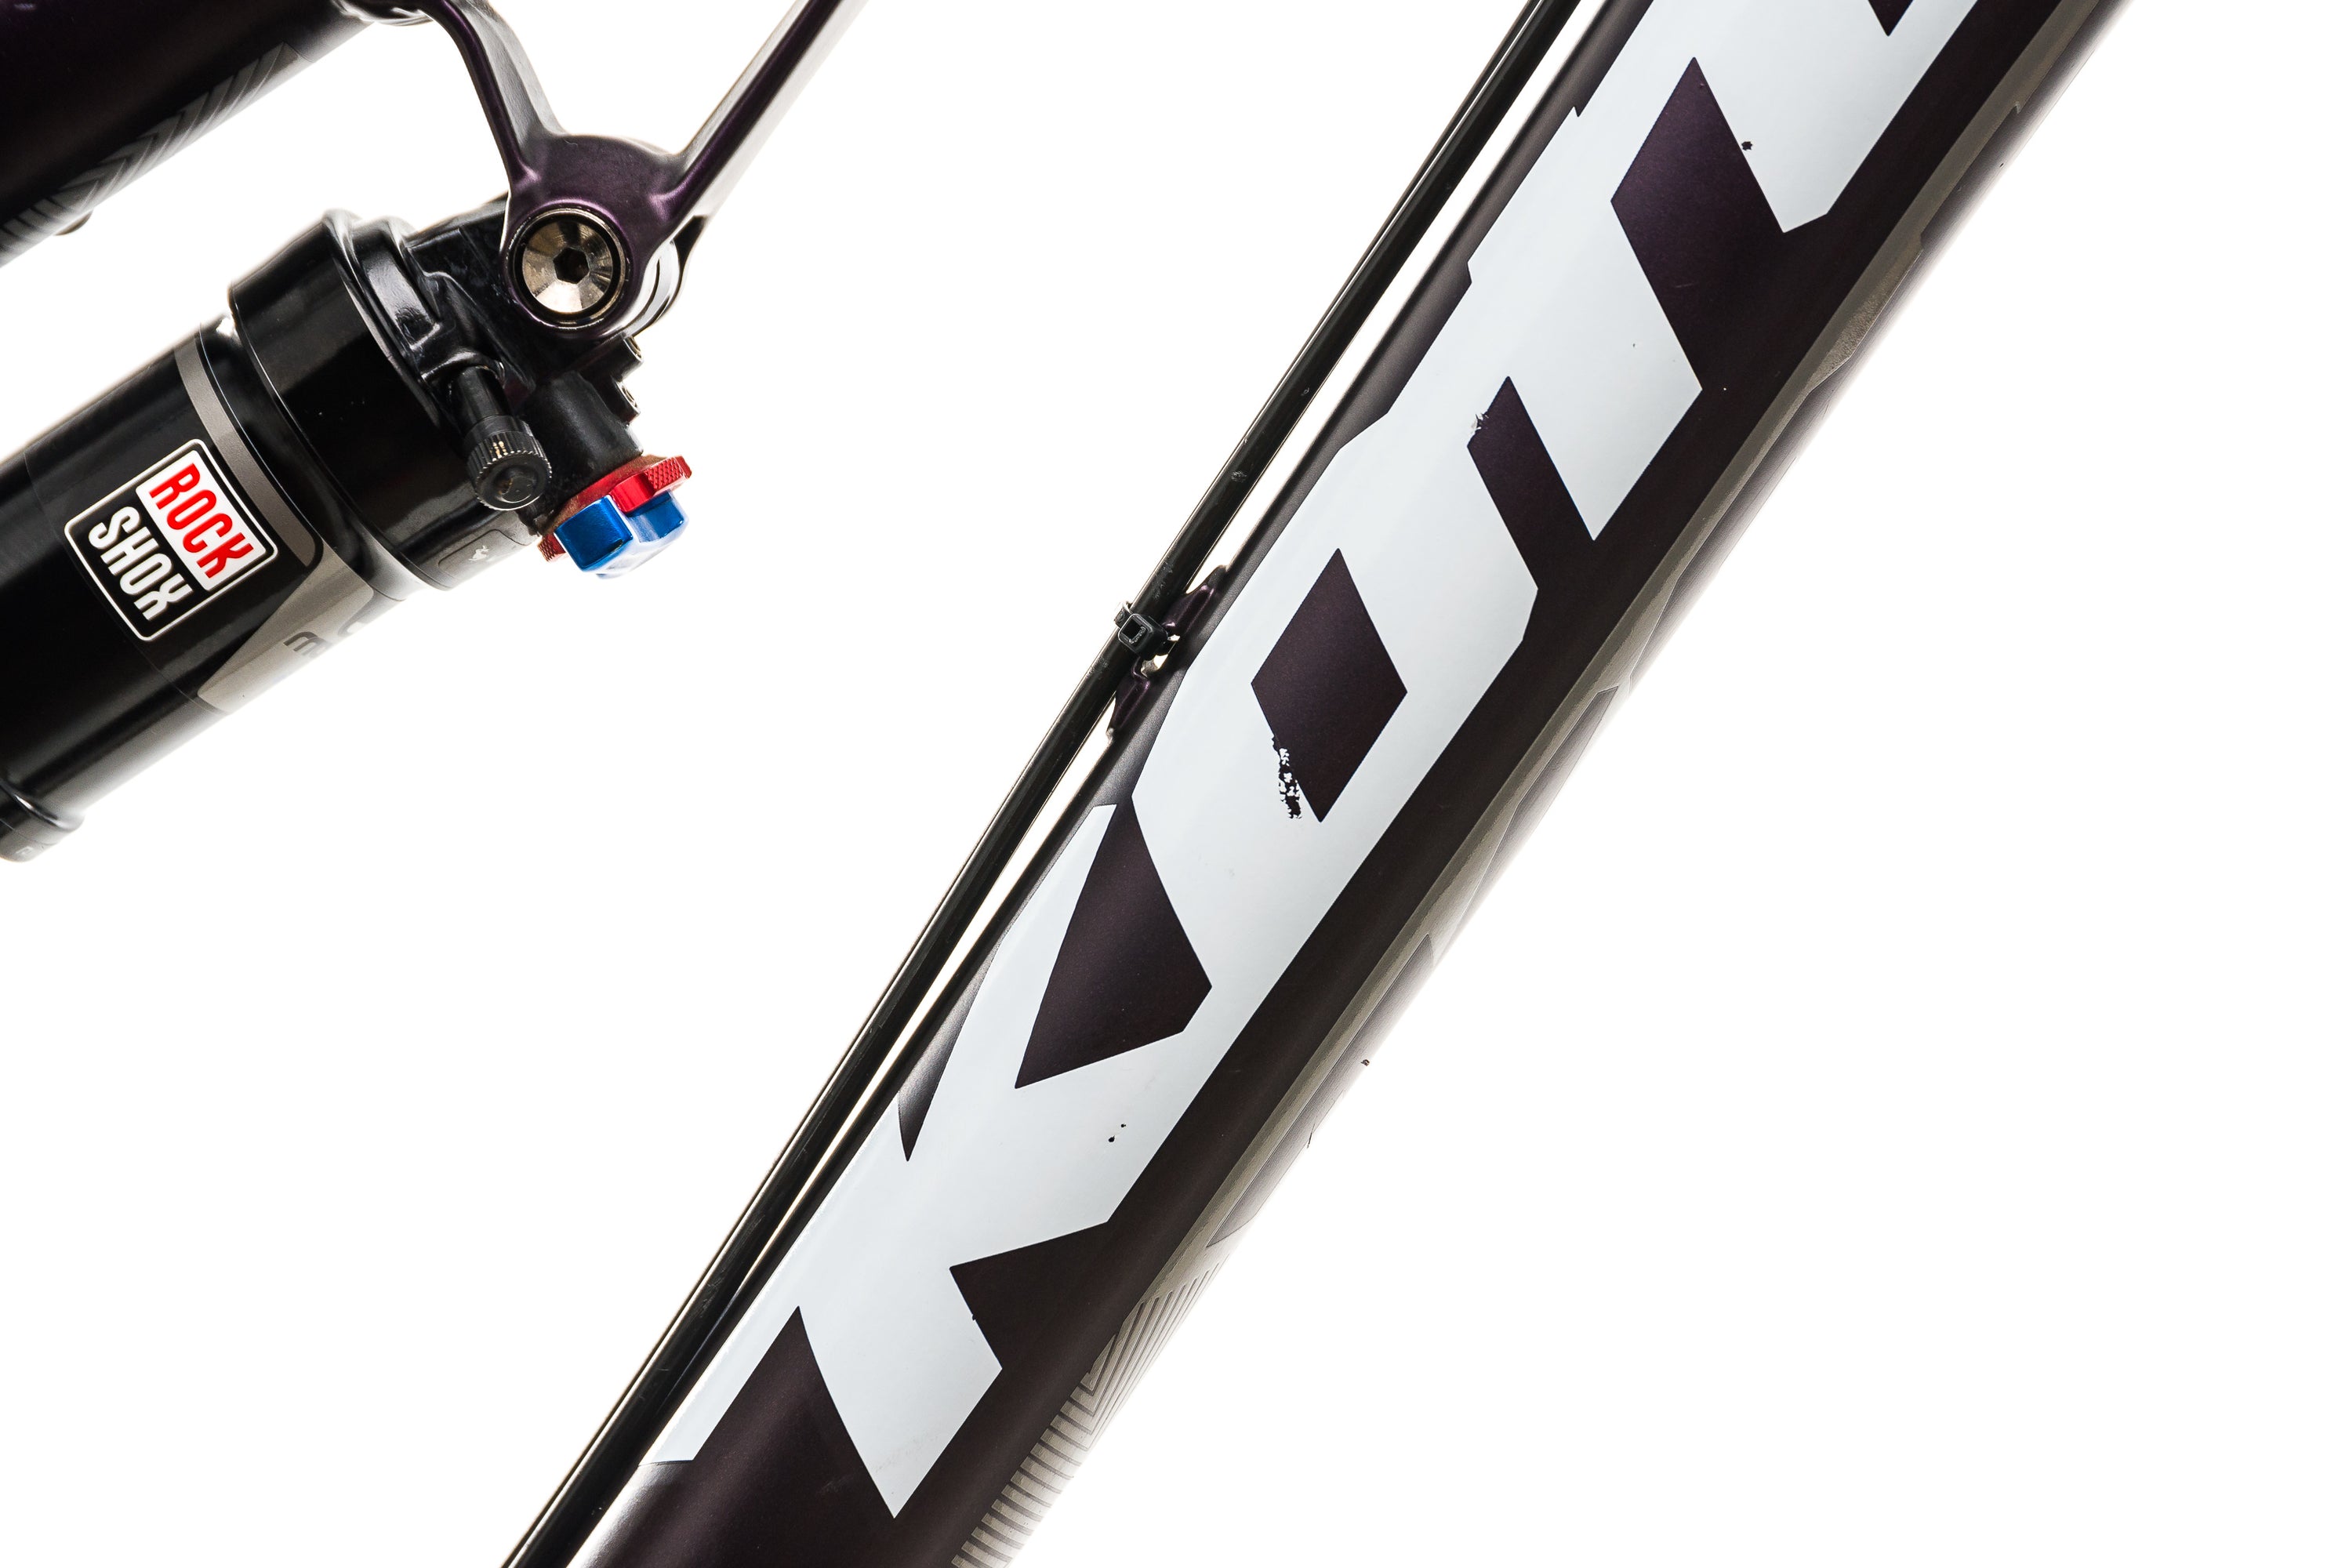 Kona Process 111 Mountain Bike - 2015, Large detail 1